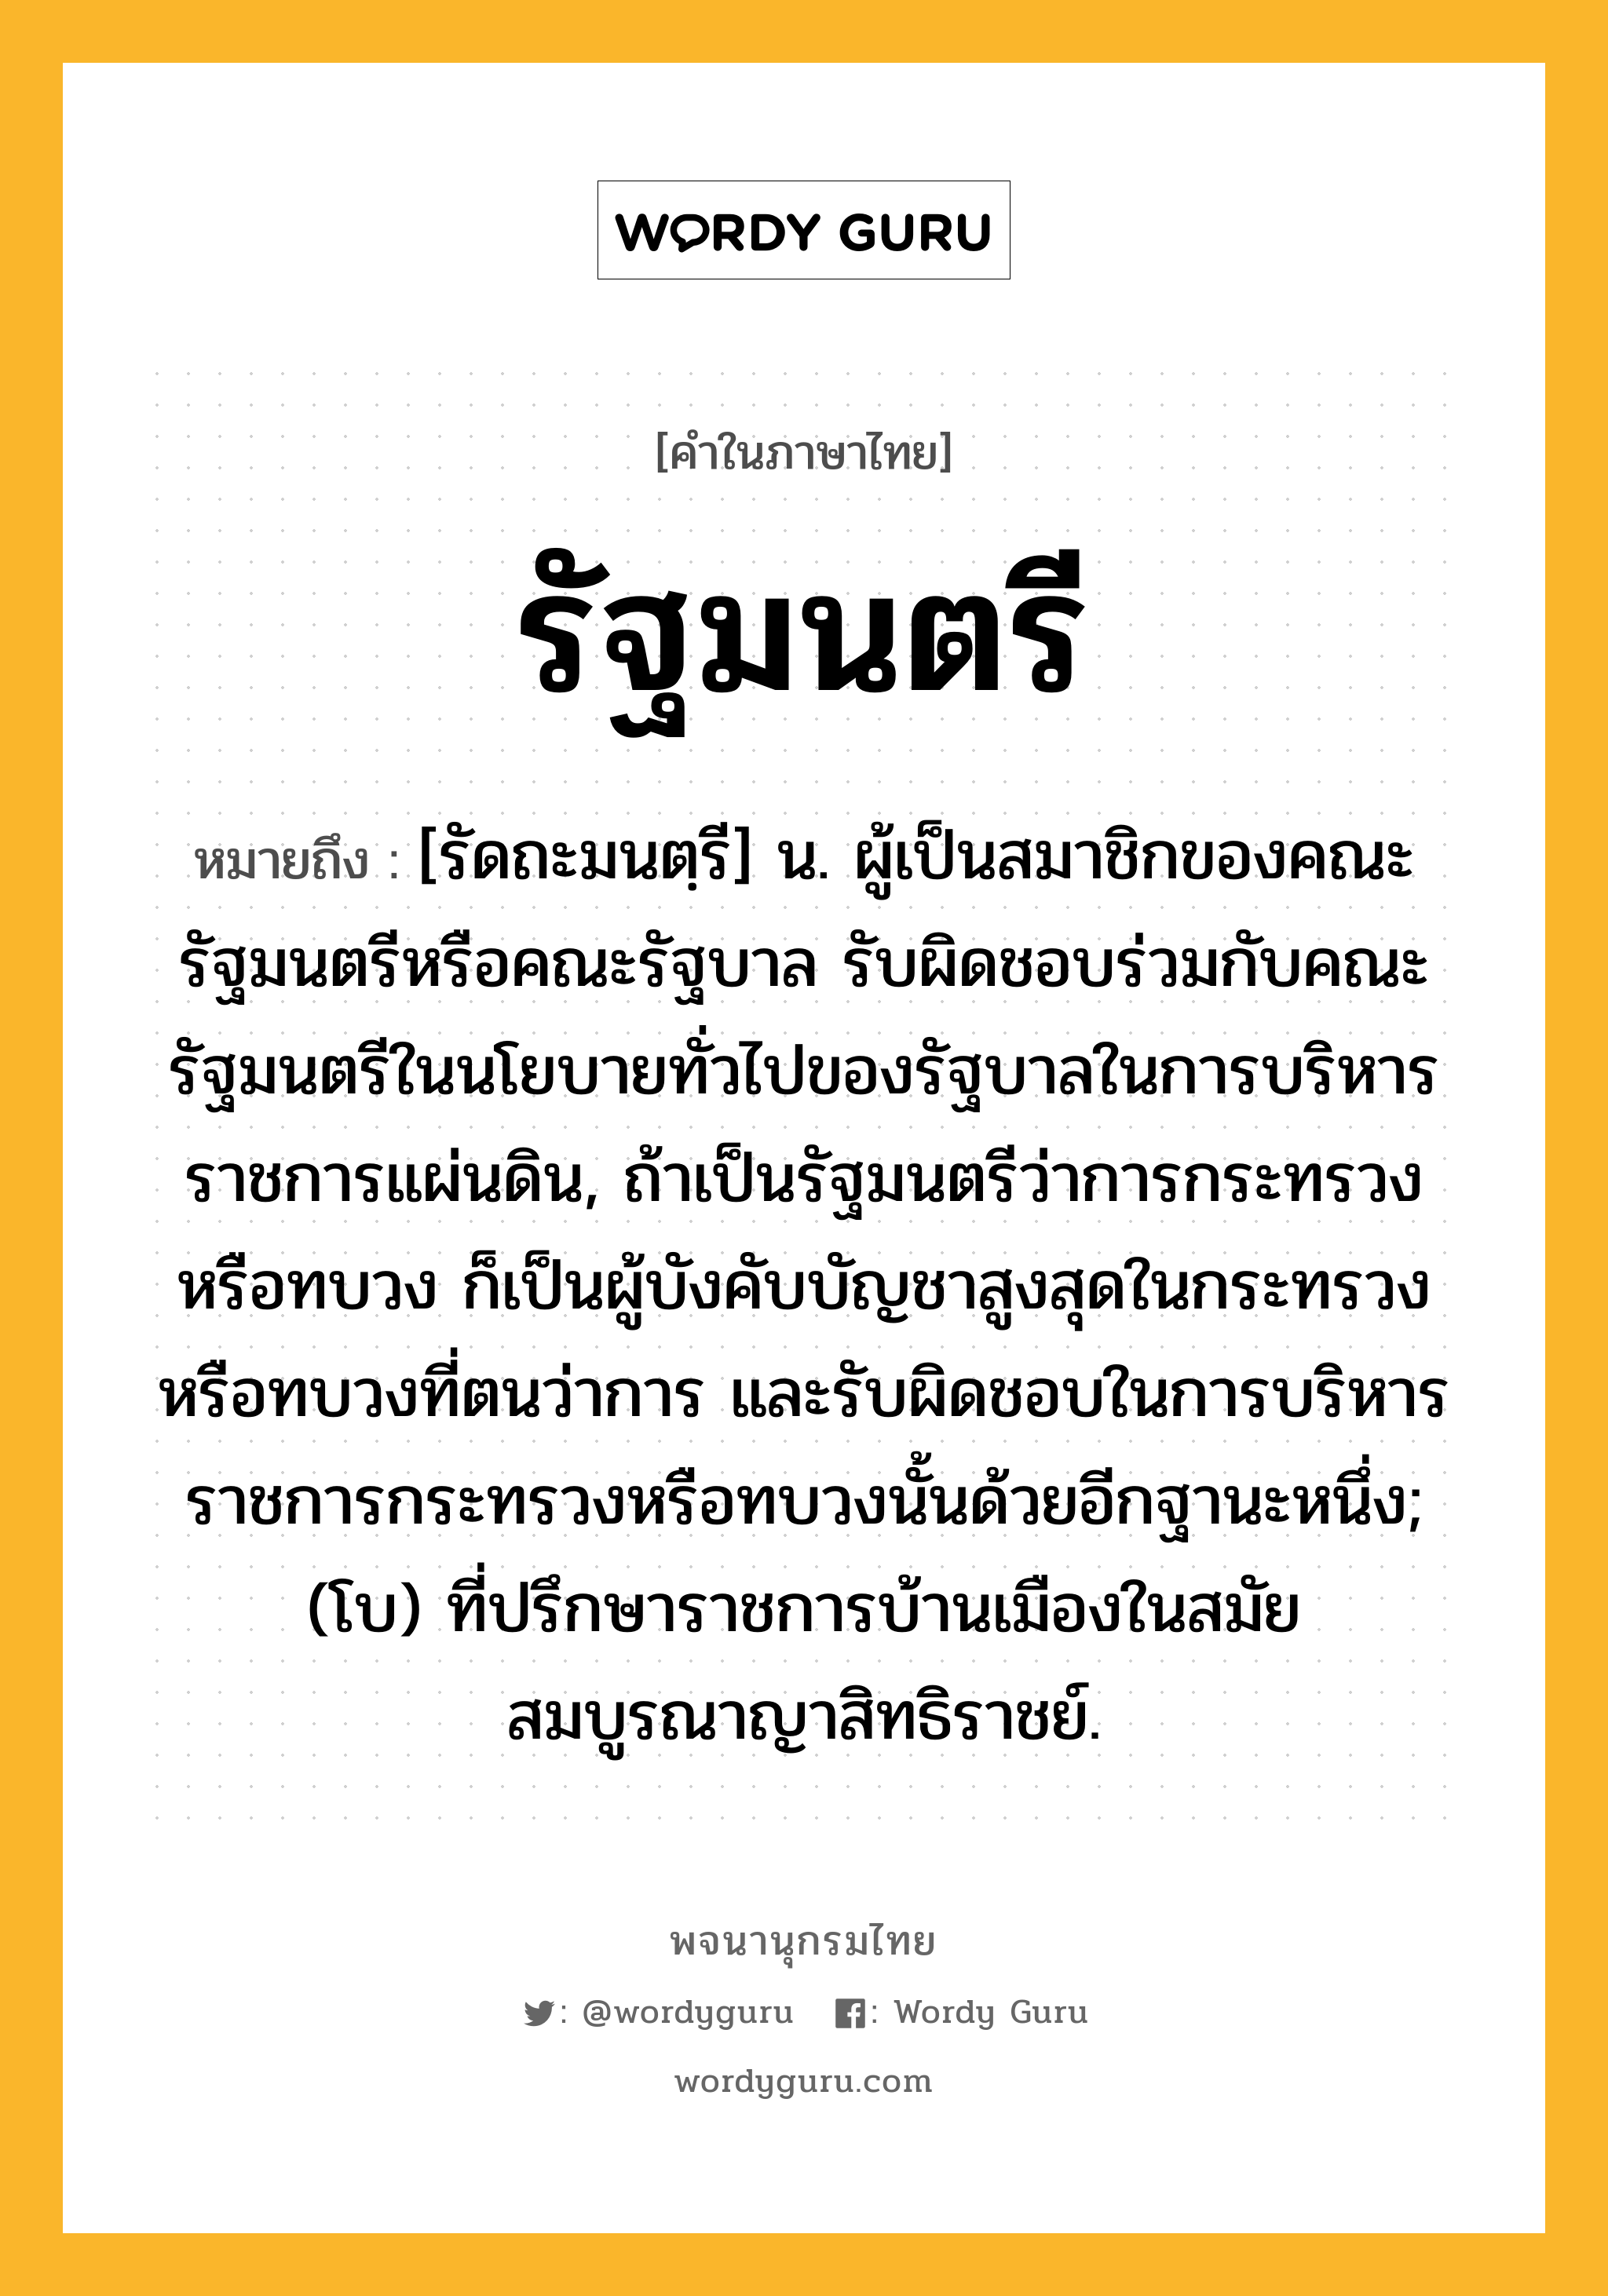 รัฐมนตรี ความหมาย หมายถึงอะไร?, คำในภาษาไทย รัฐมนตรี หมายถึง [รัดถะมนตฺรี] น. ผู้เป็นสมาชิกของคณะรัฐมนตรีหรือคณะรัฐบาล รับผิดชอบร่วมกับคณะรัฐมนตรีในนโยบายทั่วไปของรัฐบาลในการบริหารราชการแผ่นดิน, ถ้าเป็นรัฐมนตรีว่าการกระทรวงหรือทบวง ก็เป็นผู้บังคับบัญชาสูงสุดในกระทรวงหรือทบวงที่ตนว่าการ และรับผิดชอบในการบริหารราชการกระทรวงหรือทบวงนั้นด้วยอีกฐานะหนึ่ง; (โบ) ที่ปรึกษาราชการบ้านเมืองในสมัยสมบูรณาญาสิทธิราชย์.